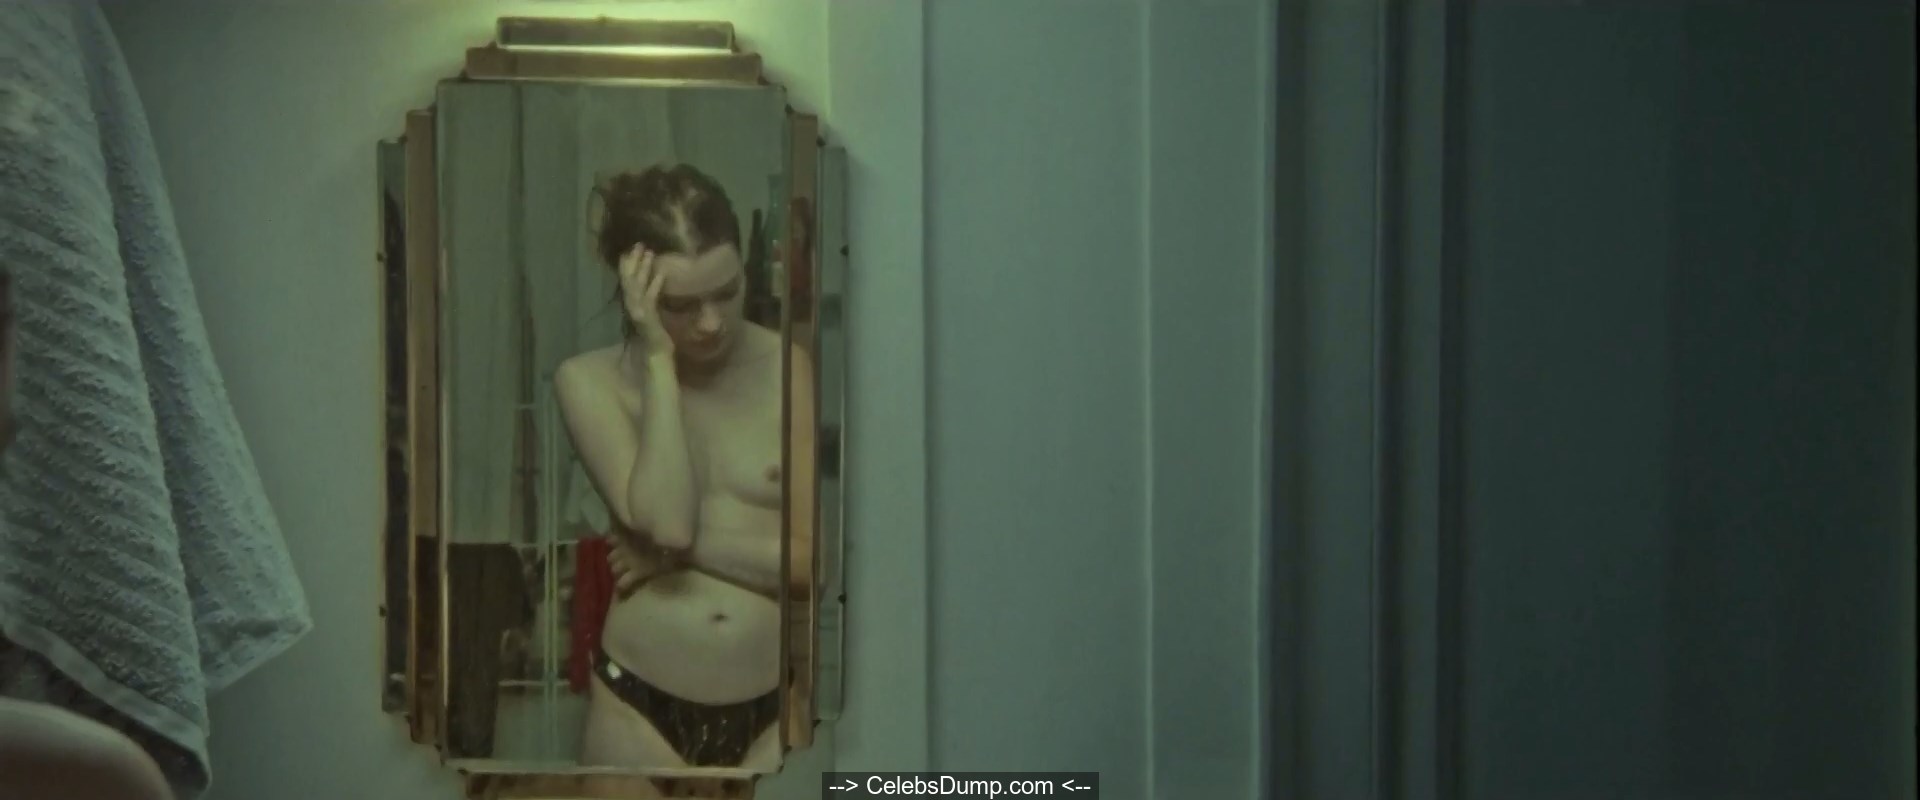 Esme Creed-Miles topless at Jamie (2020) .